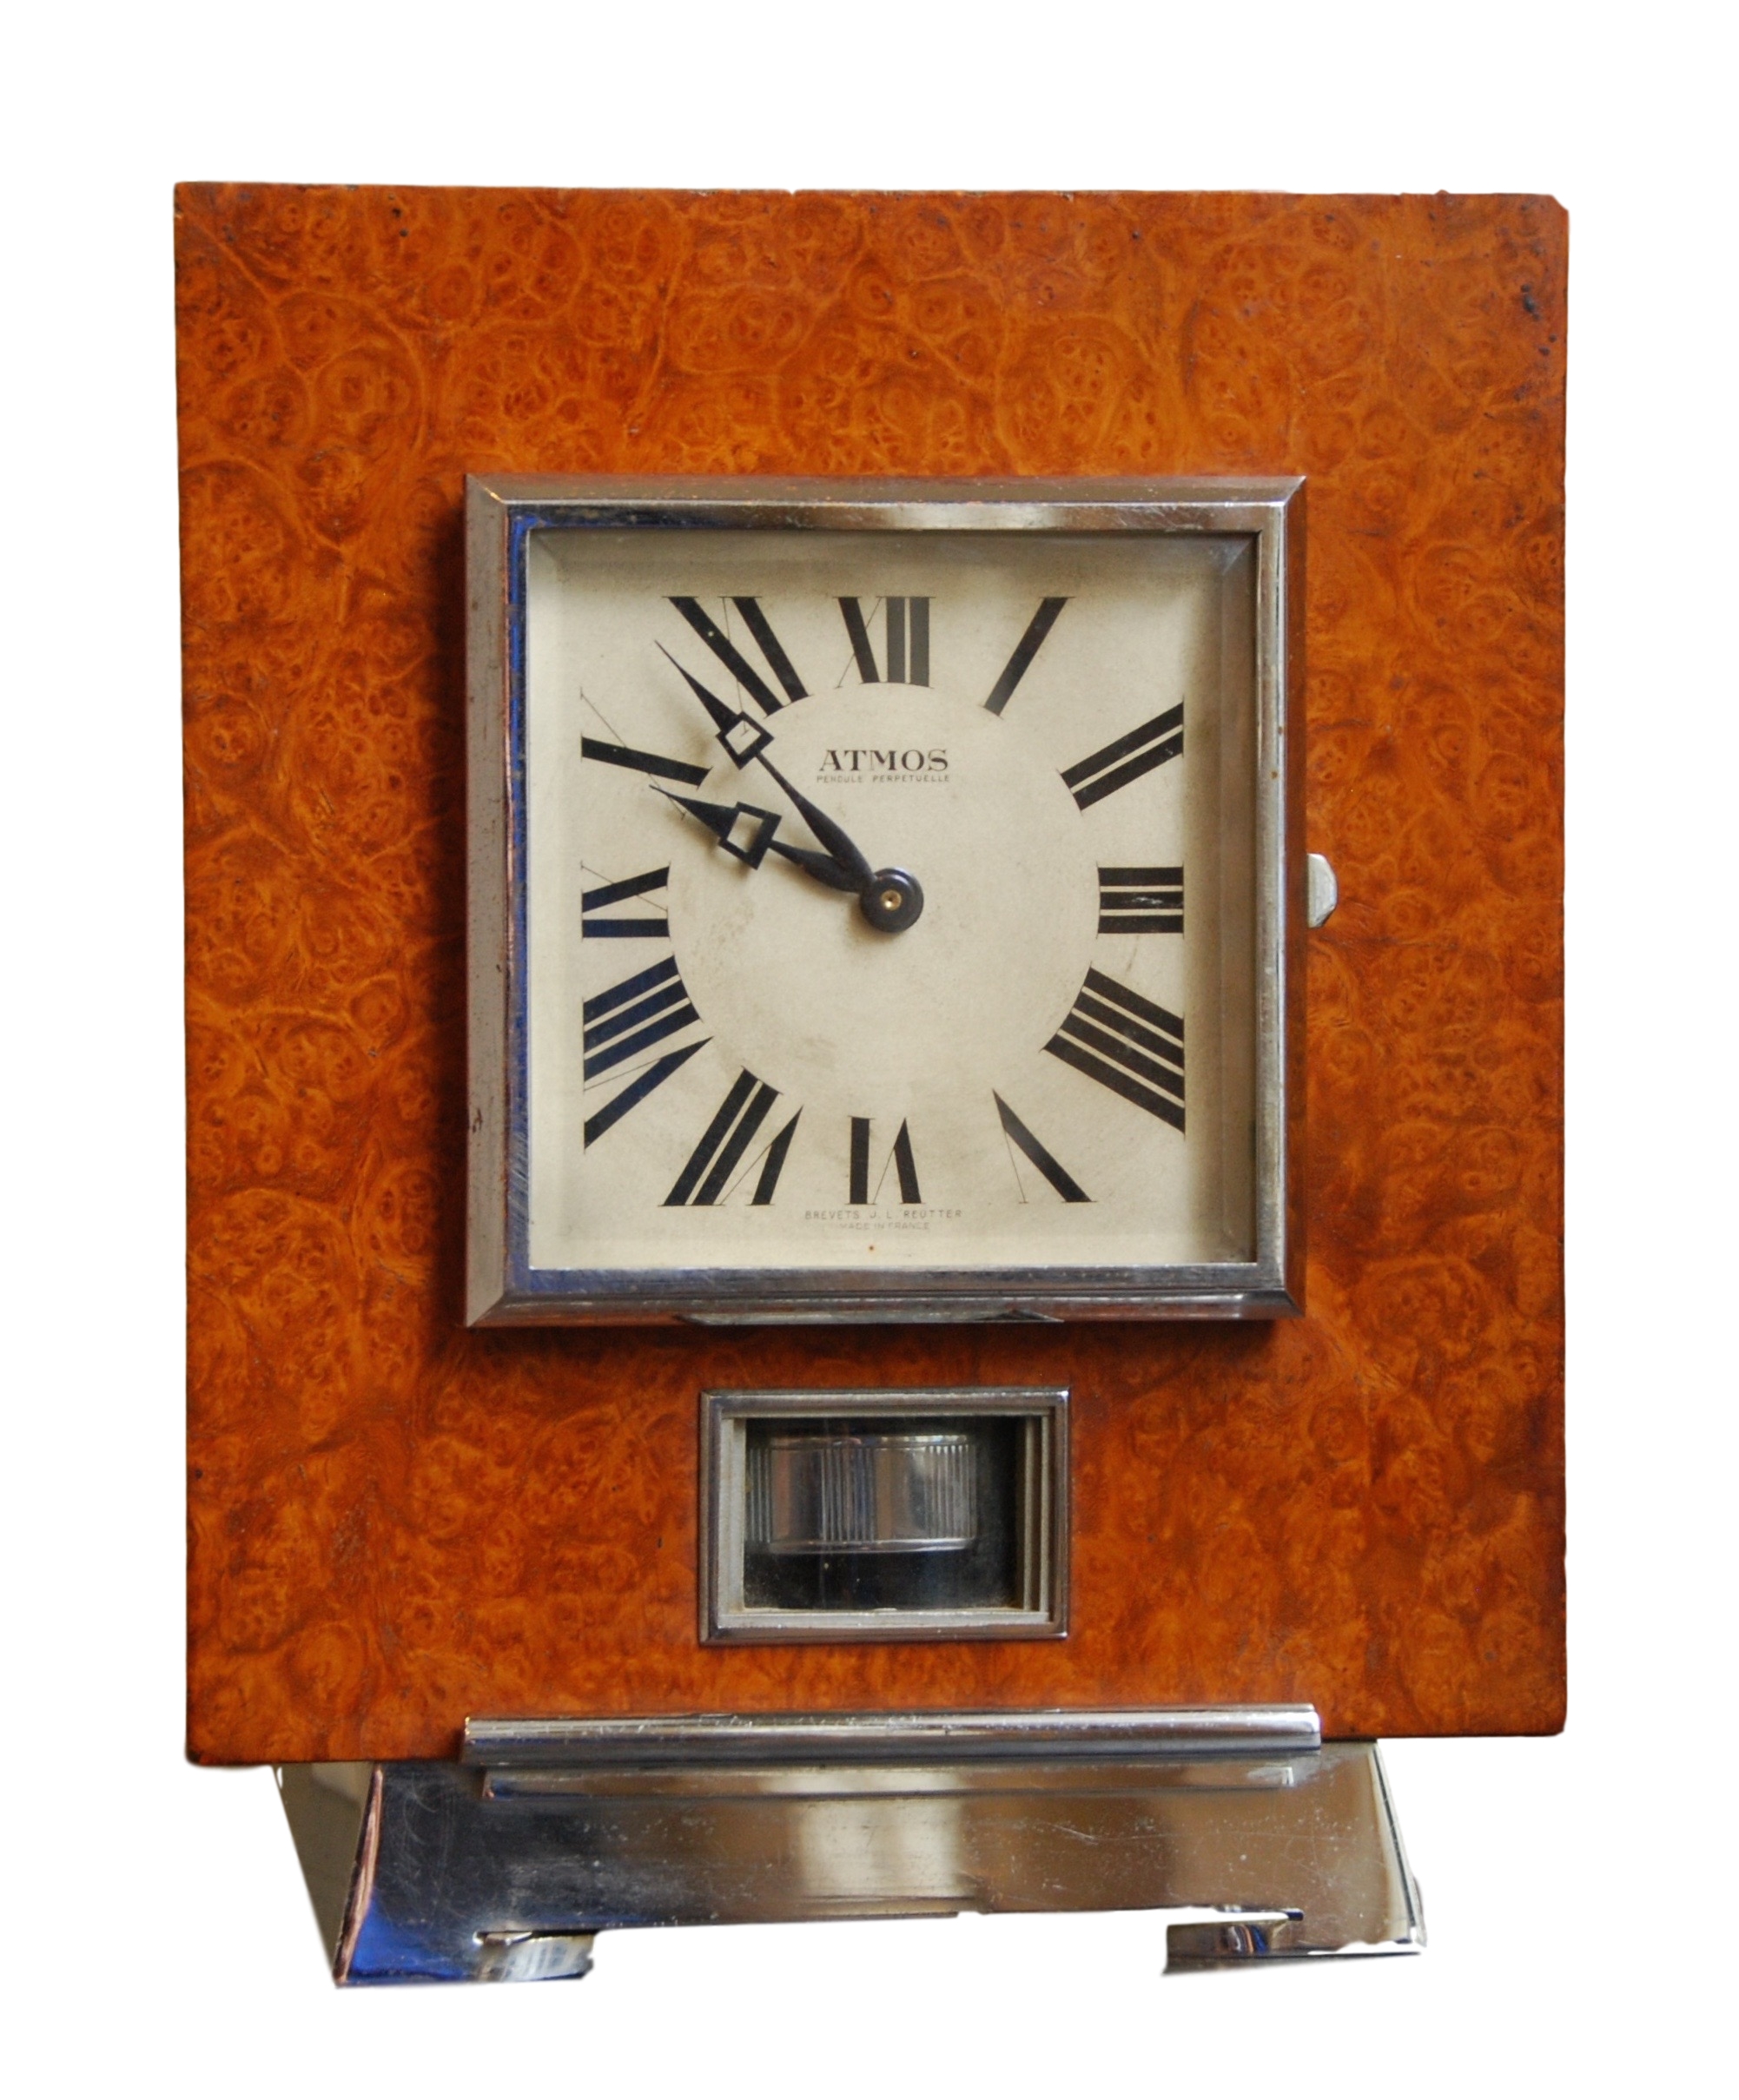 Atmos clock, Amboina wood, J.L. Reutter, nr 919, France circa 1930.